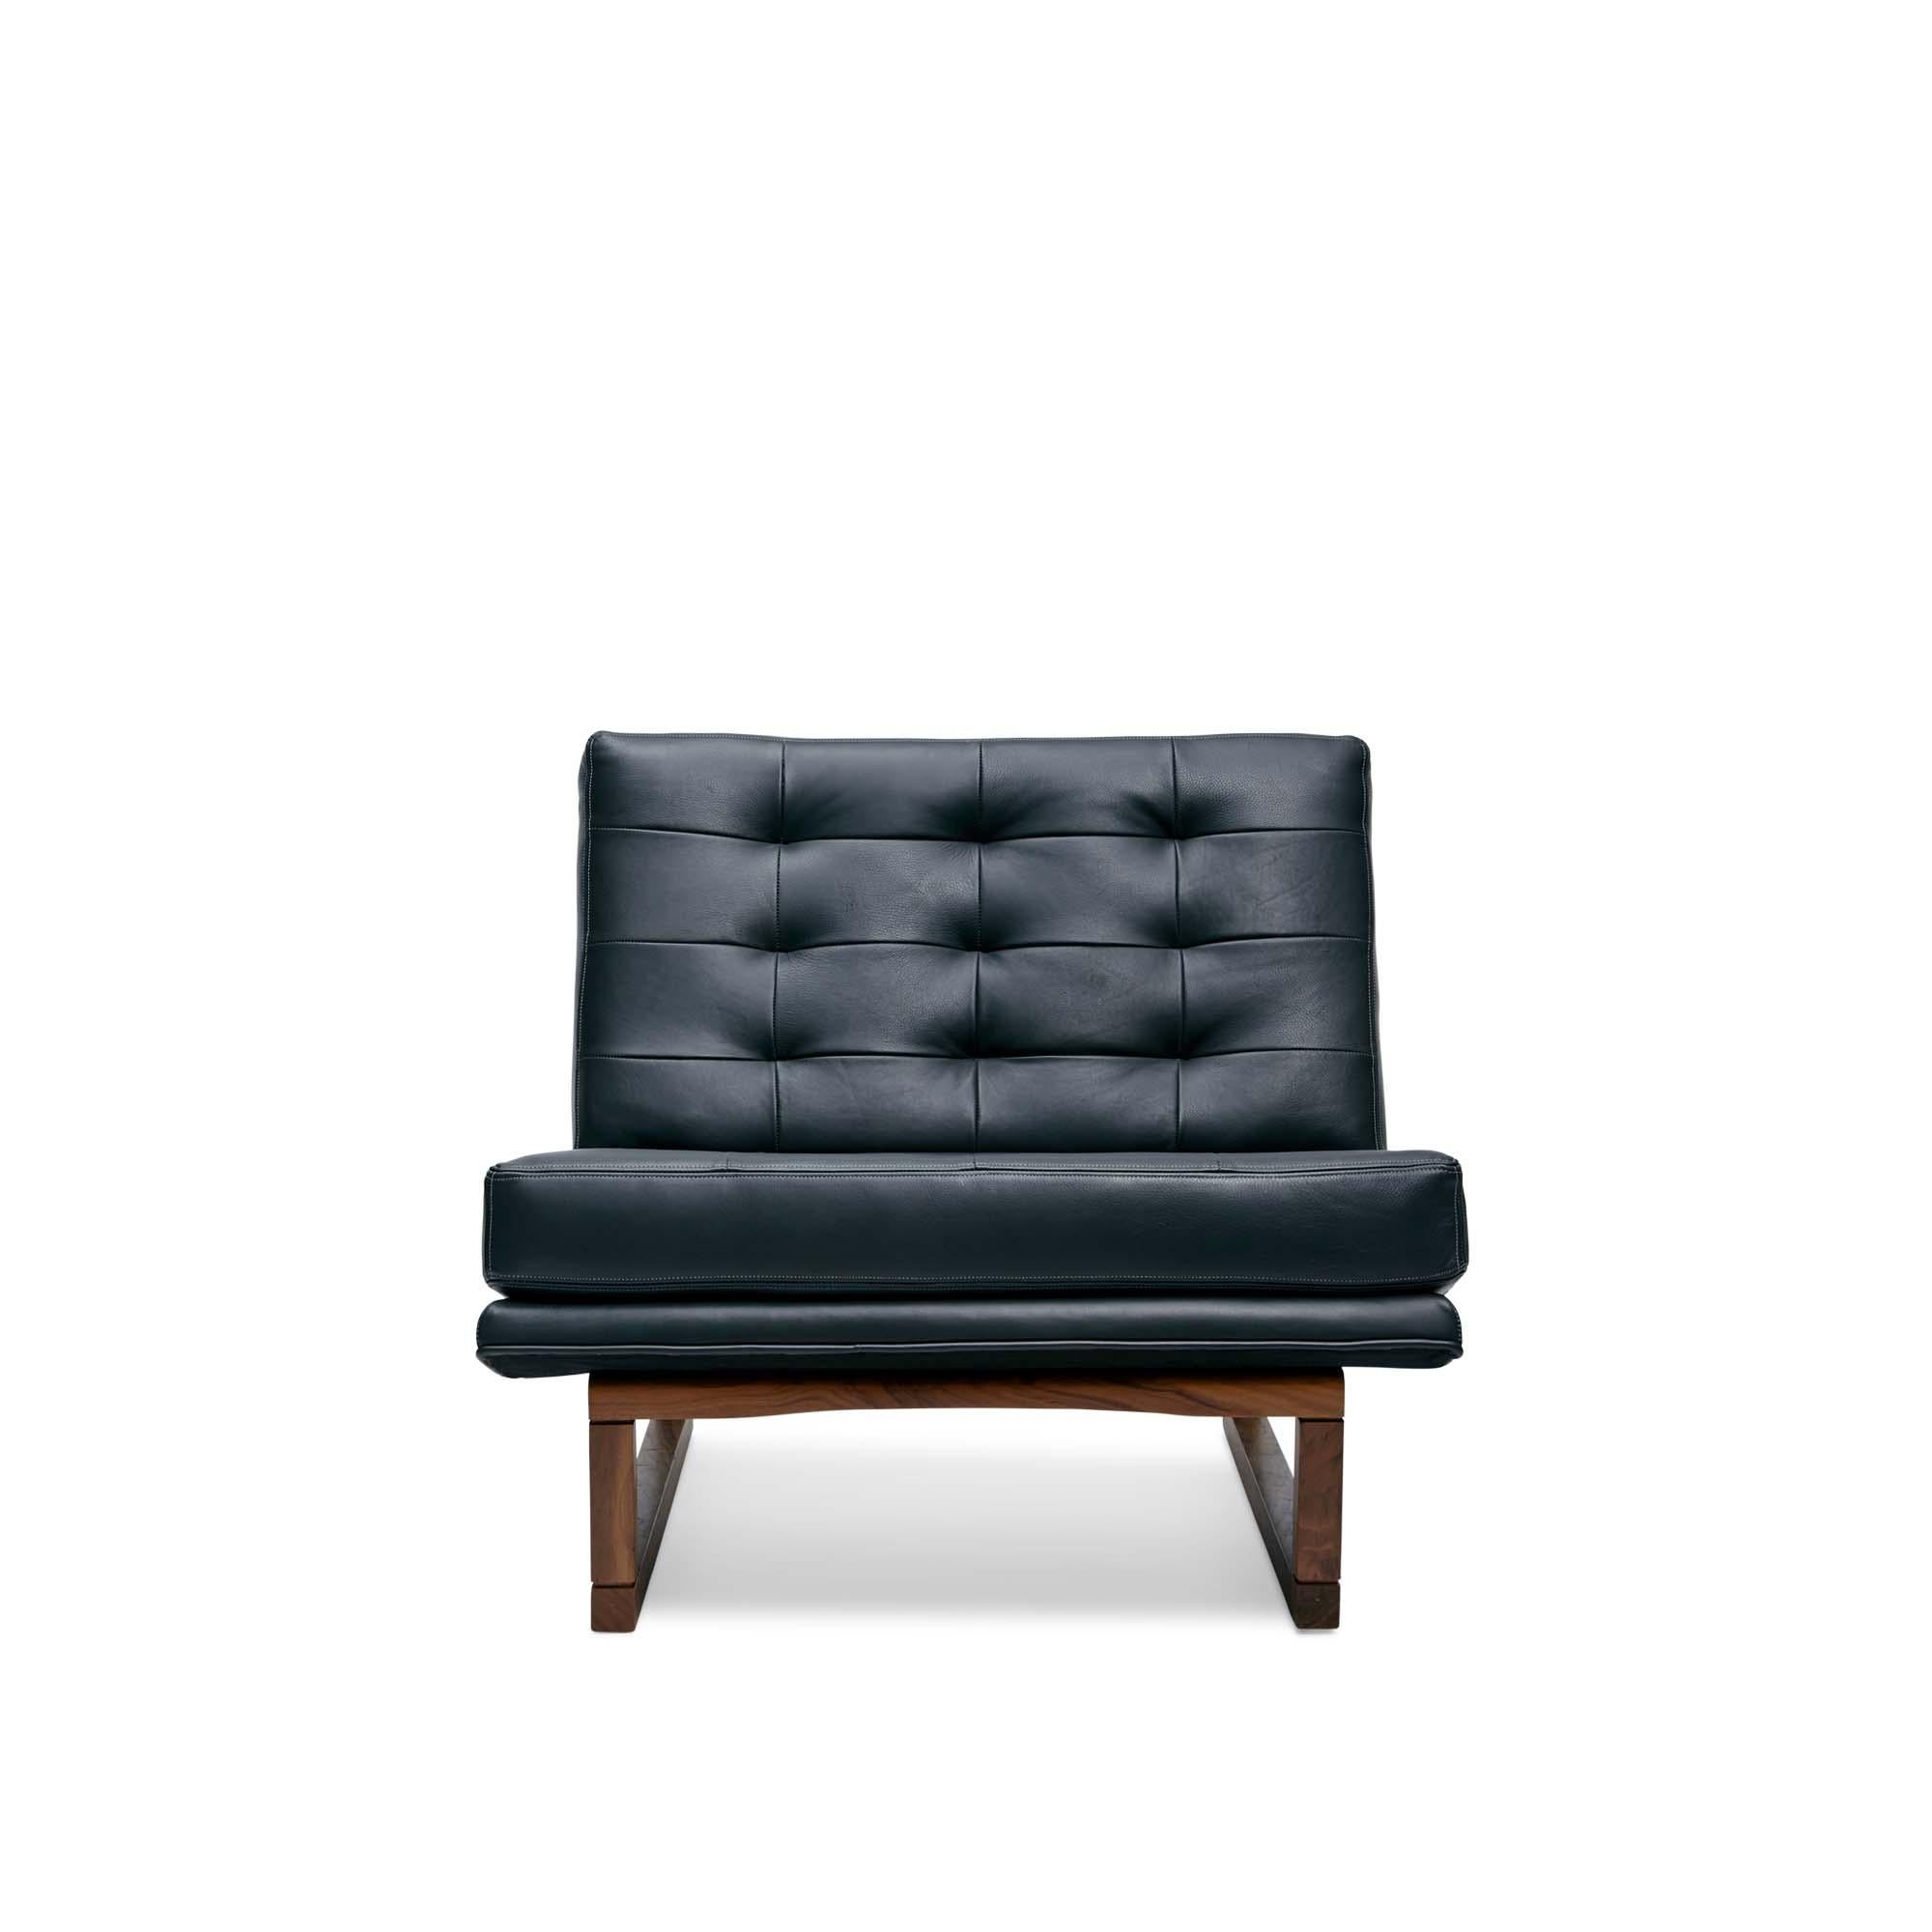 Der Sessel Griffin ist ein breiter, armloser Loungesessel mit Biskuit-Tufting. Der Sockel besteht aus massivem amerikanischem Nussbaum oder Weißeiche.

Die Lawson-Fenning Collection'S wird in Los Angeles, Kalifornien, entworfen und handgefertigt.